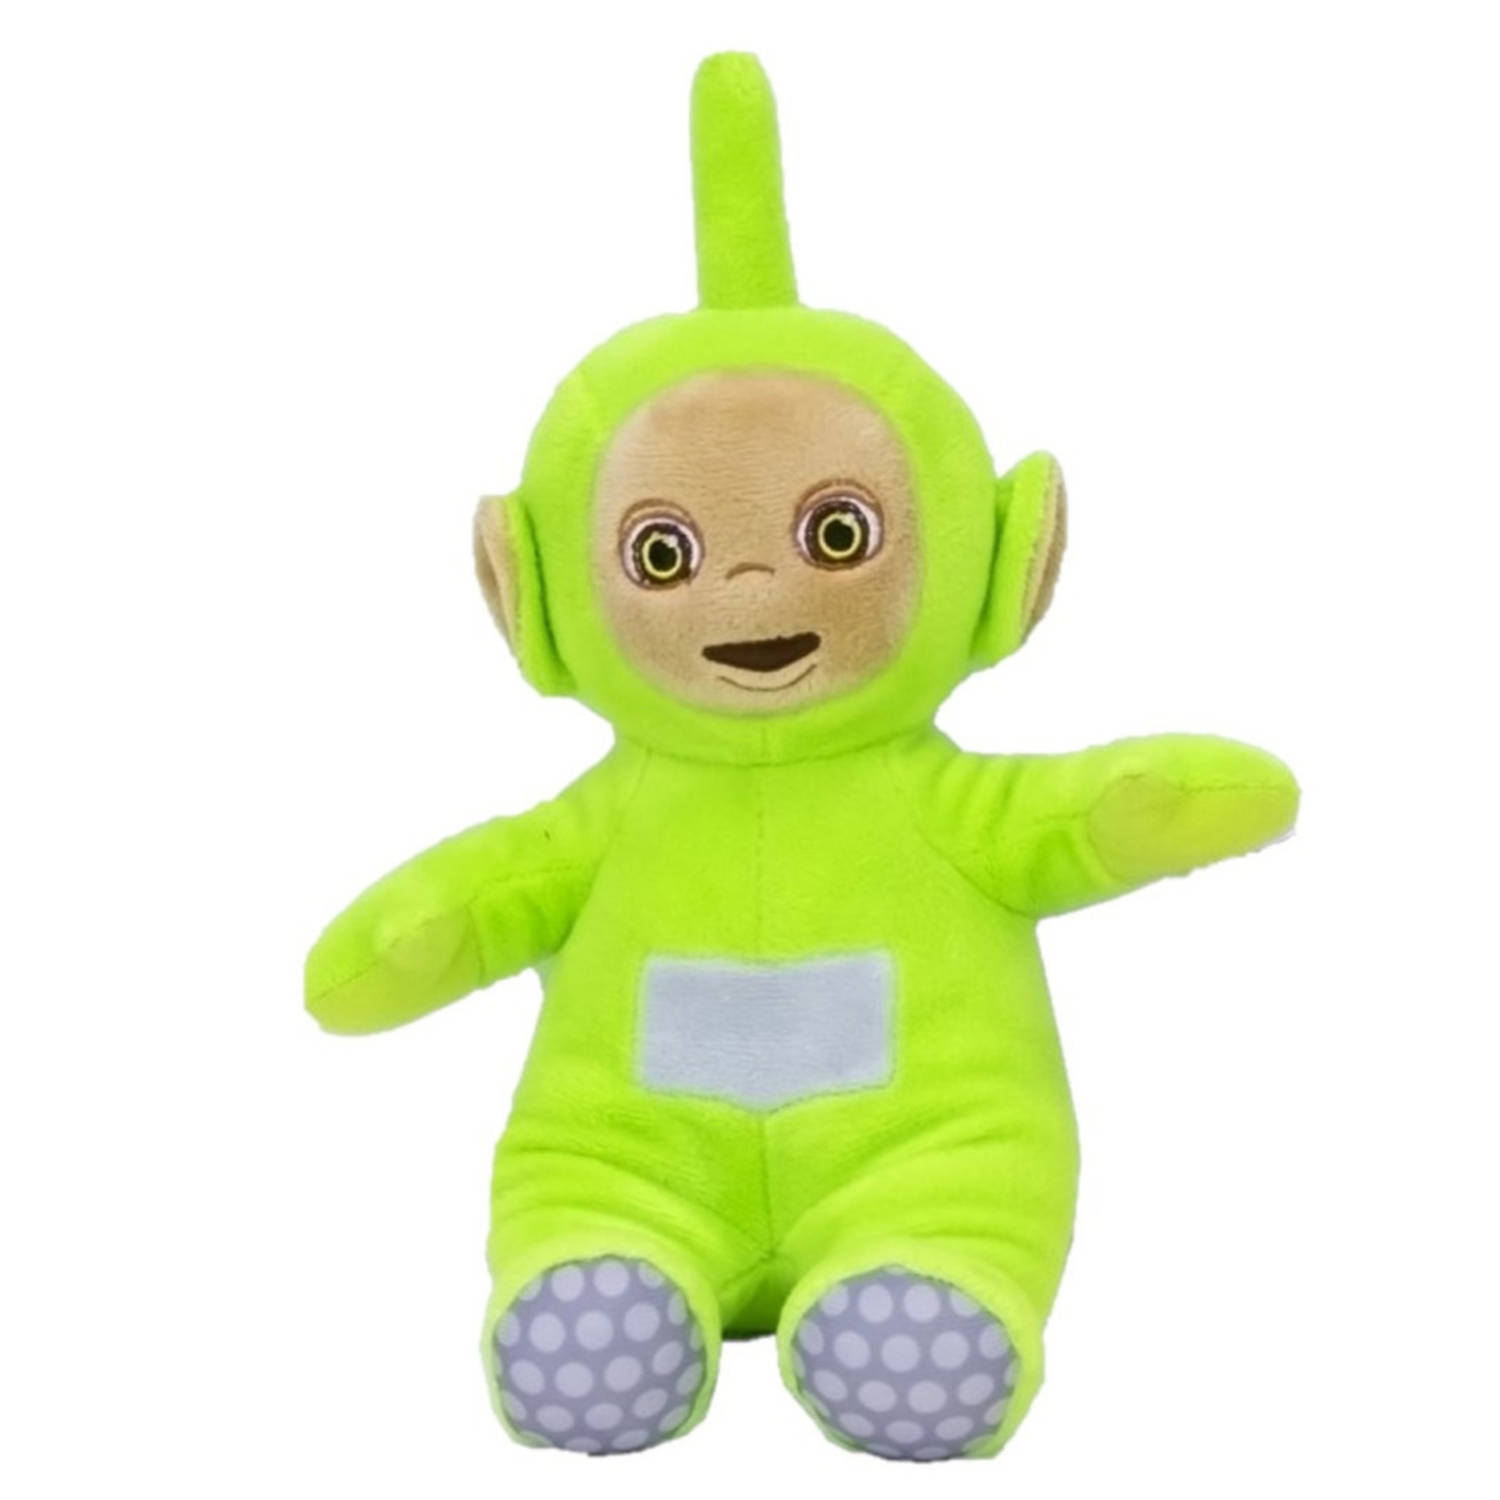 Pluche Teletubbies speelgoed knuffel Dipsy groen 36 cm - Knuffelpop